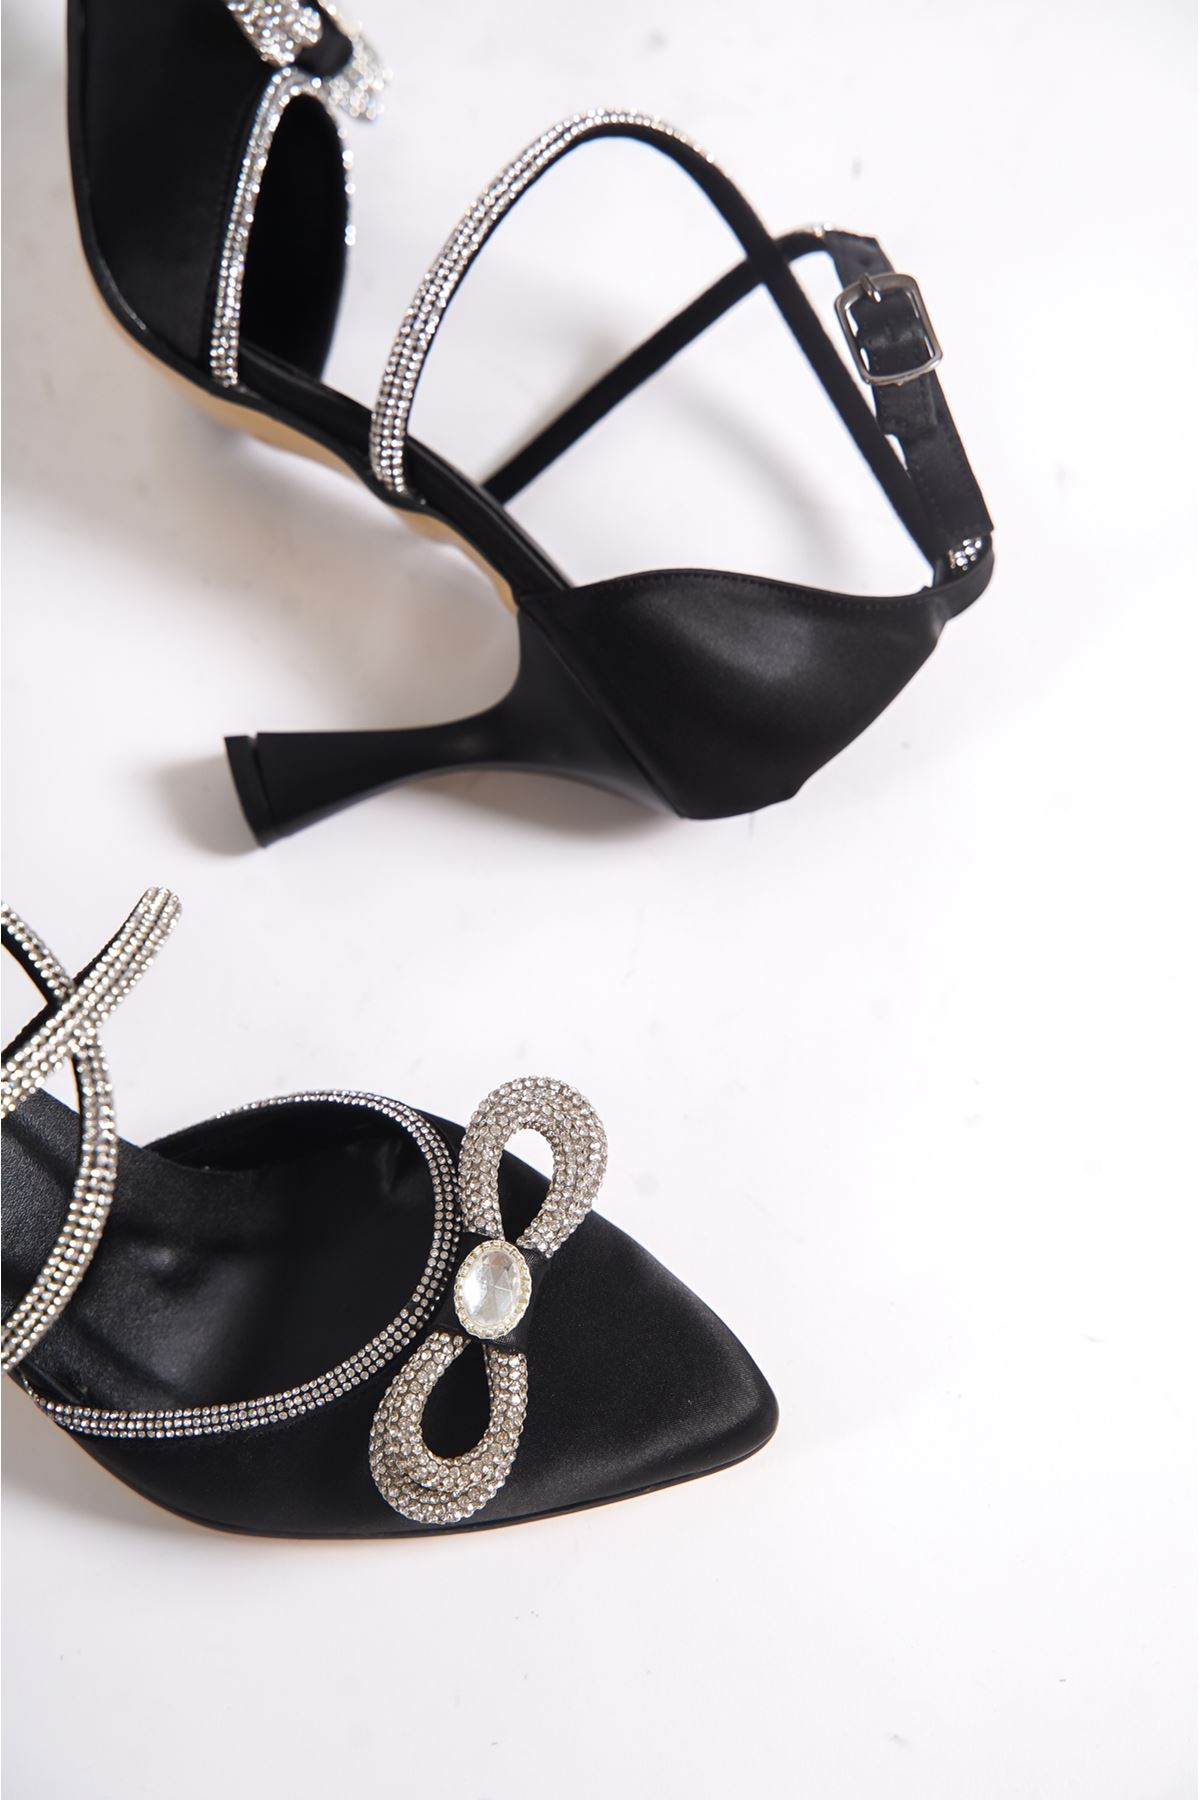 Damien Siyah Taşlı Saten Topuklu Kadın Ayakkabı